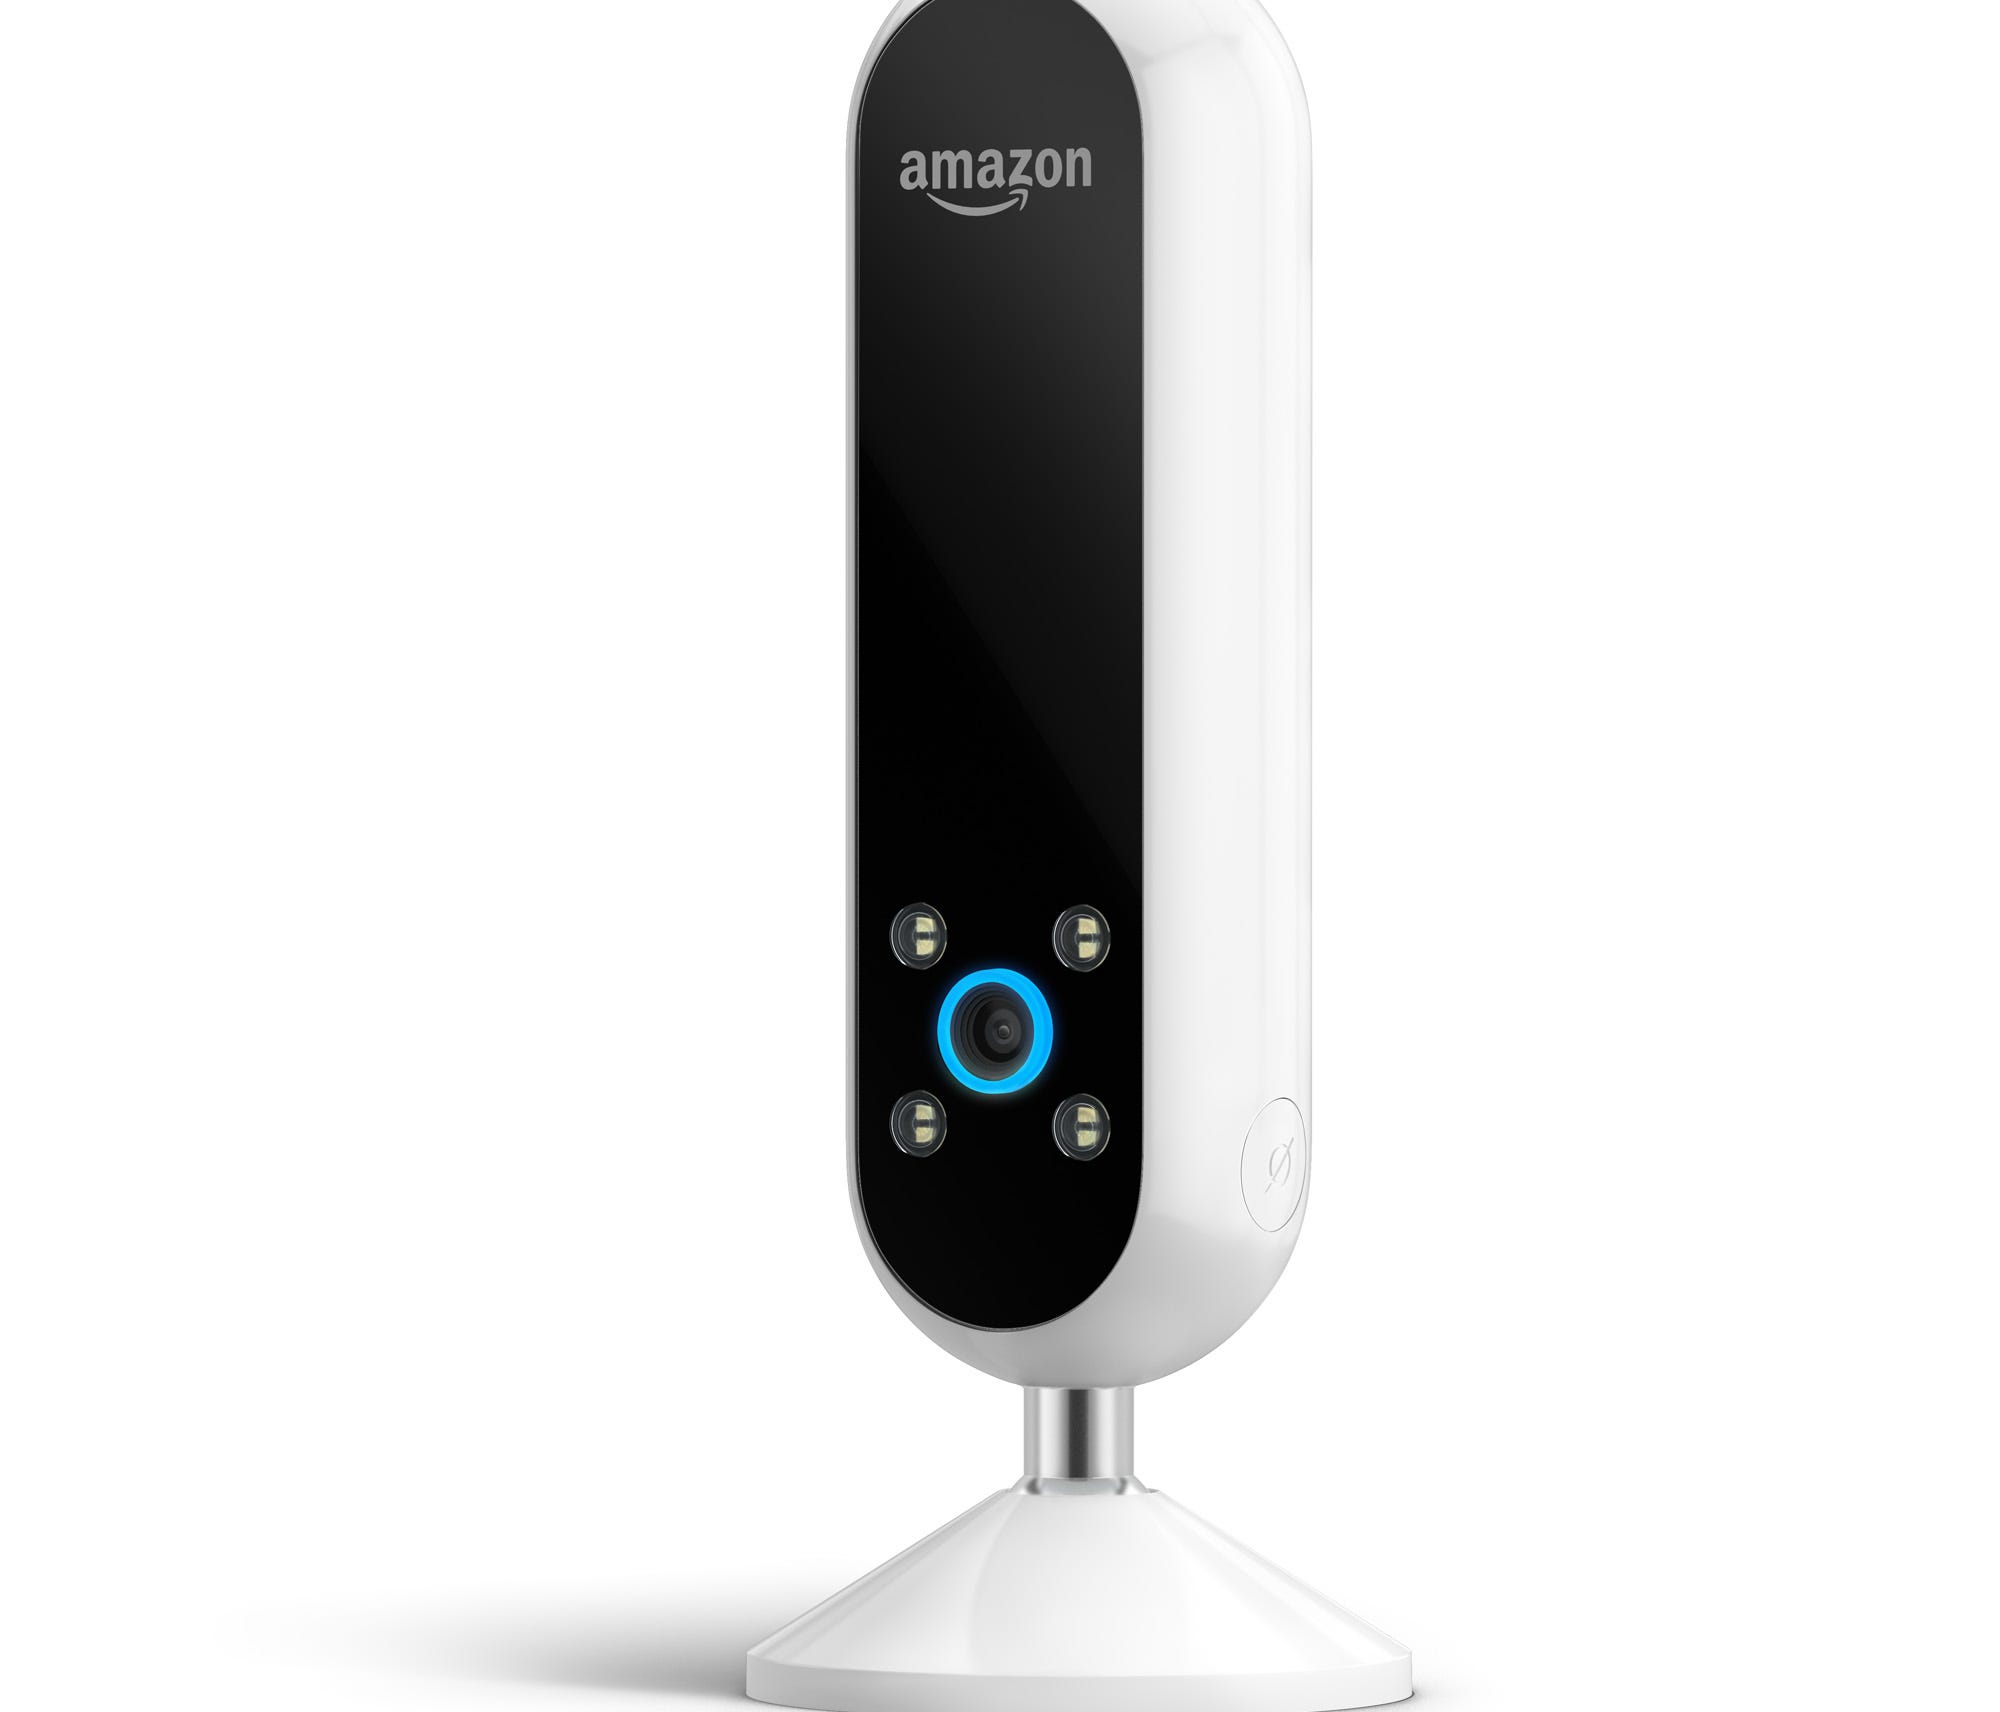 The new Amazon Echo Look